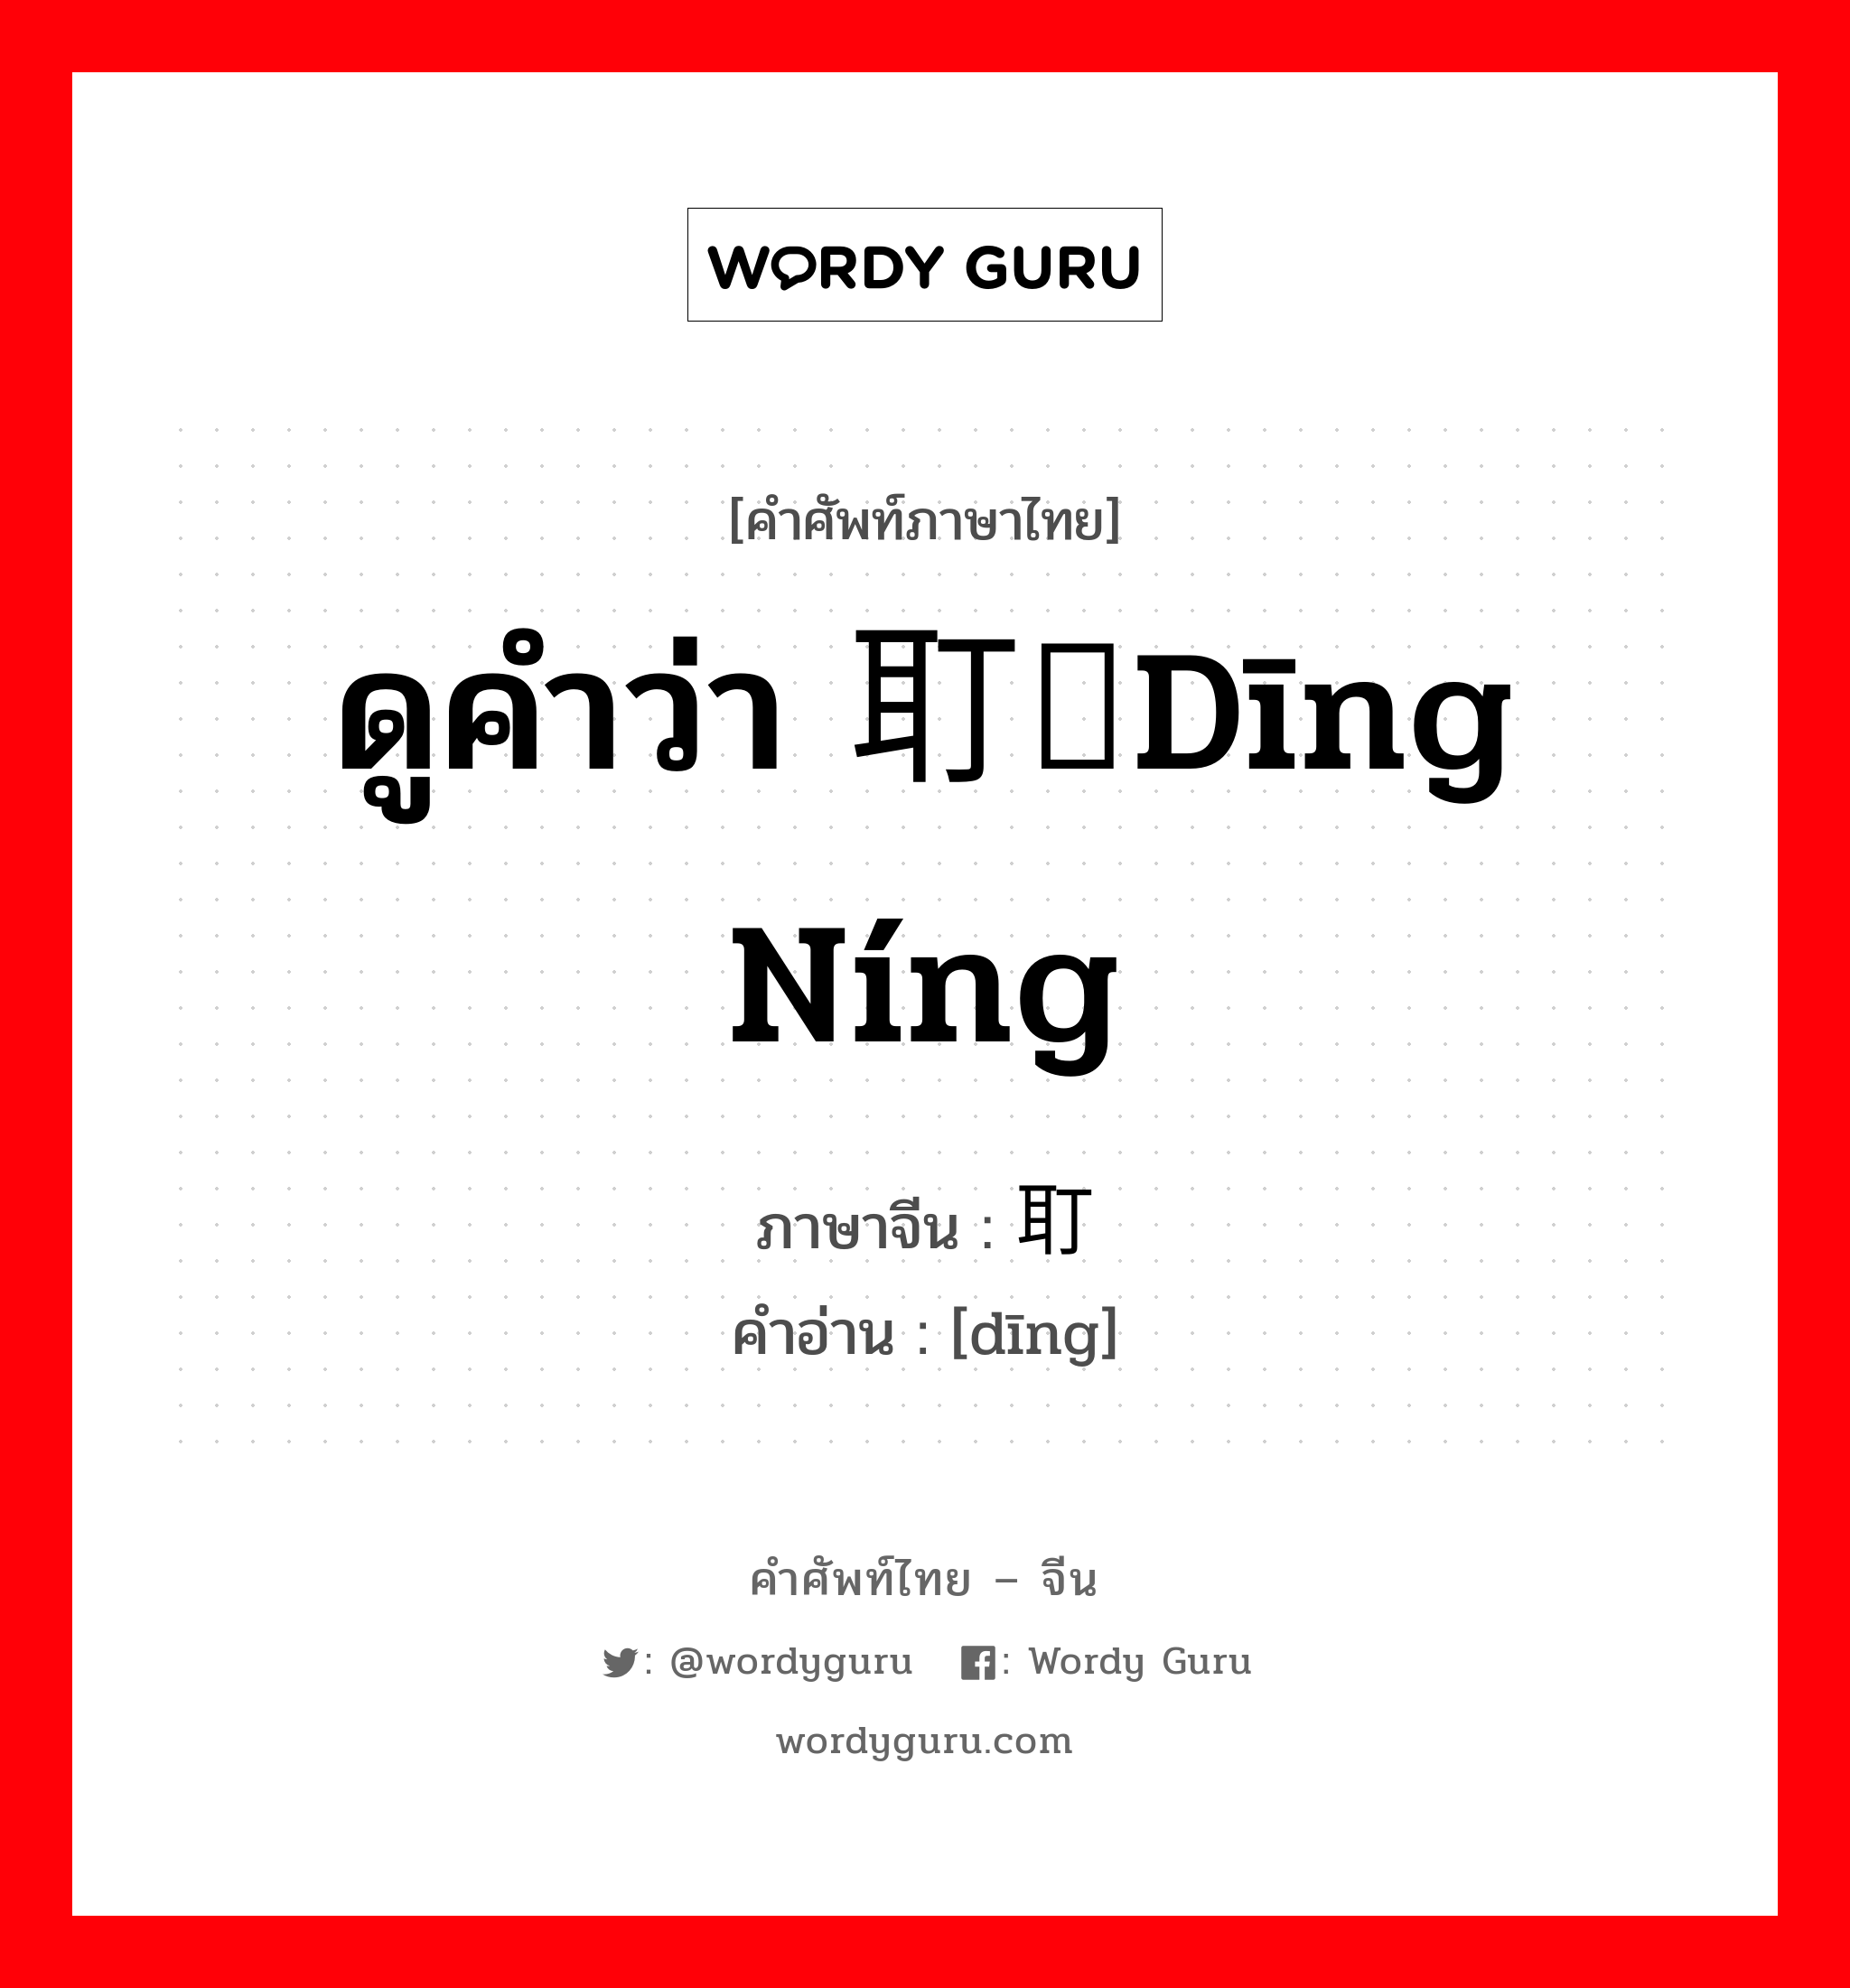 ดูคำว่า 耵聍dīng níng ภาษาจีนคืออะไร, คำศัพท์ภาษาไทย - จีน ดูคำว่า 耵聍dīng níng ภาษาจีน 耵 คำอ่าน [dīng]